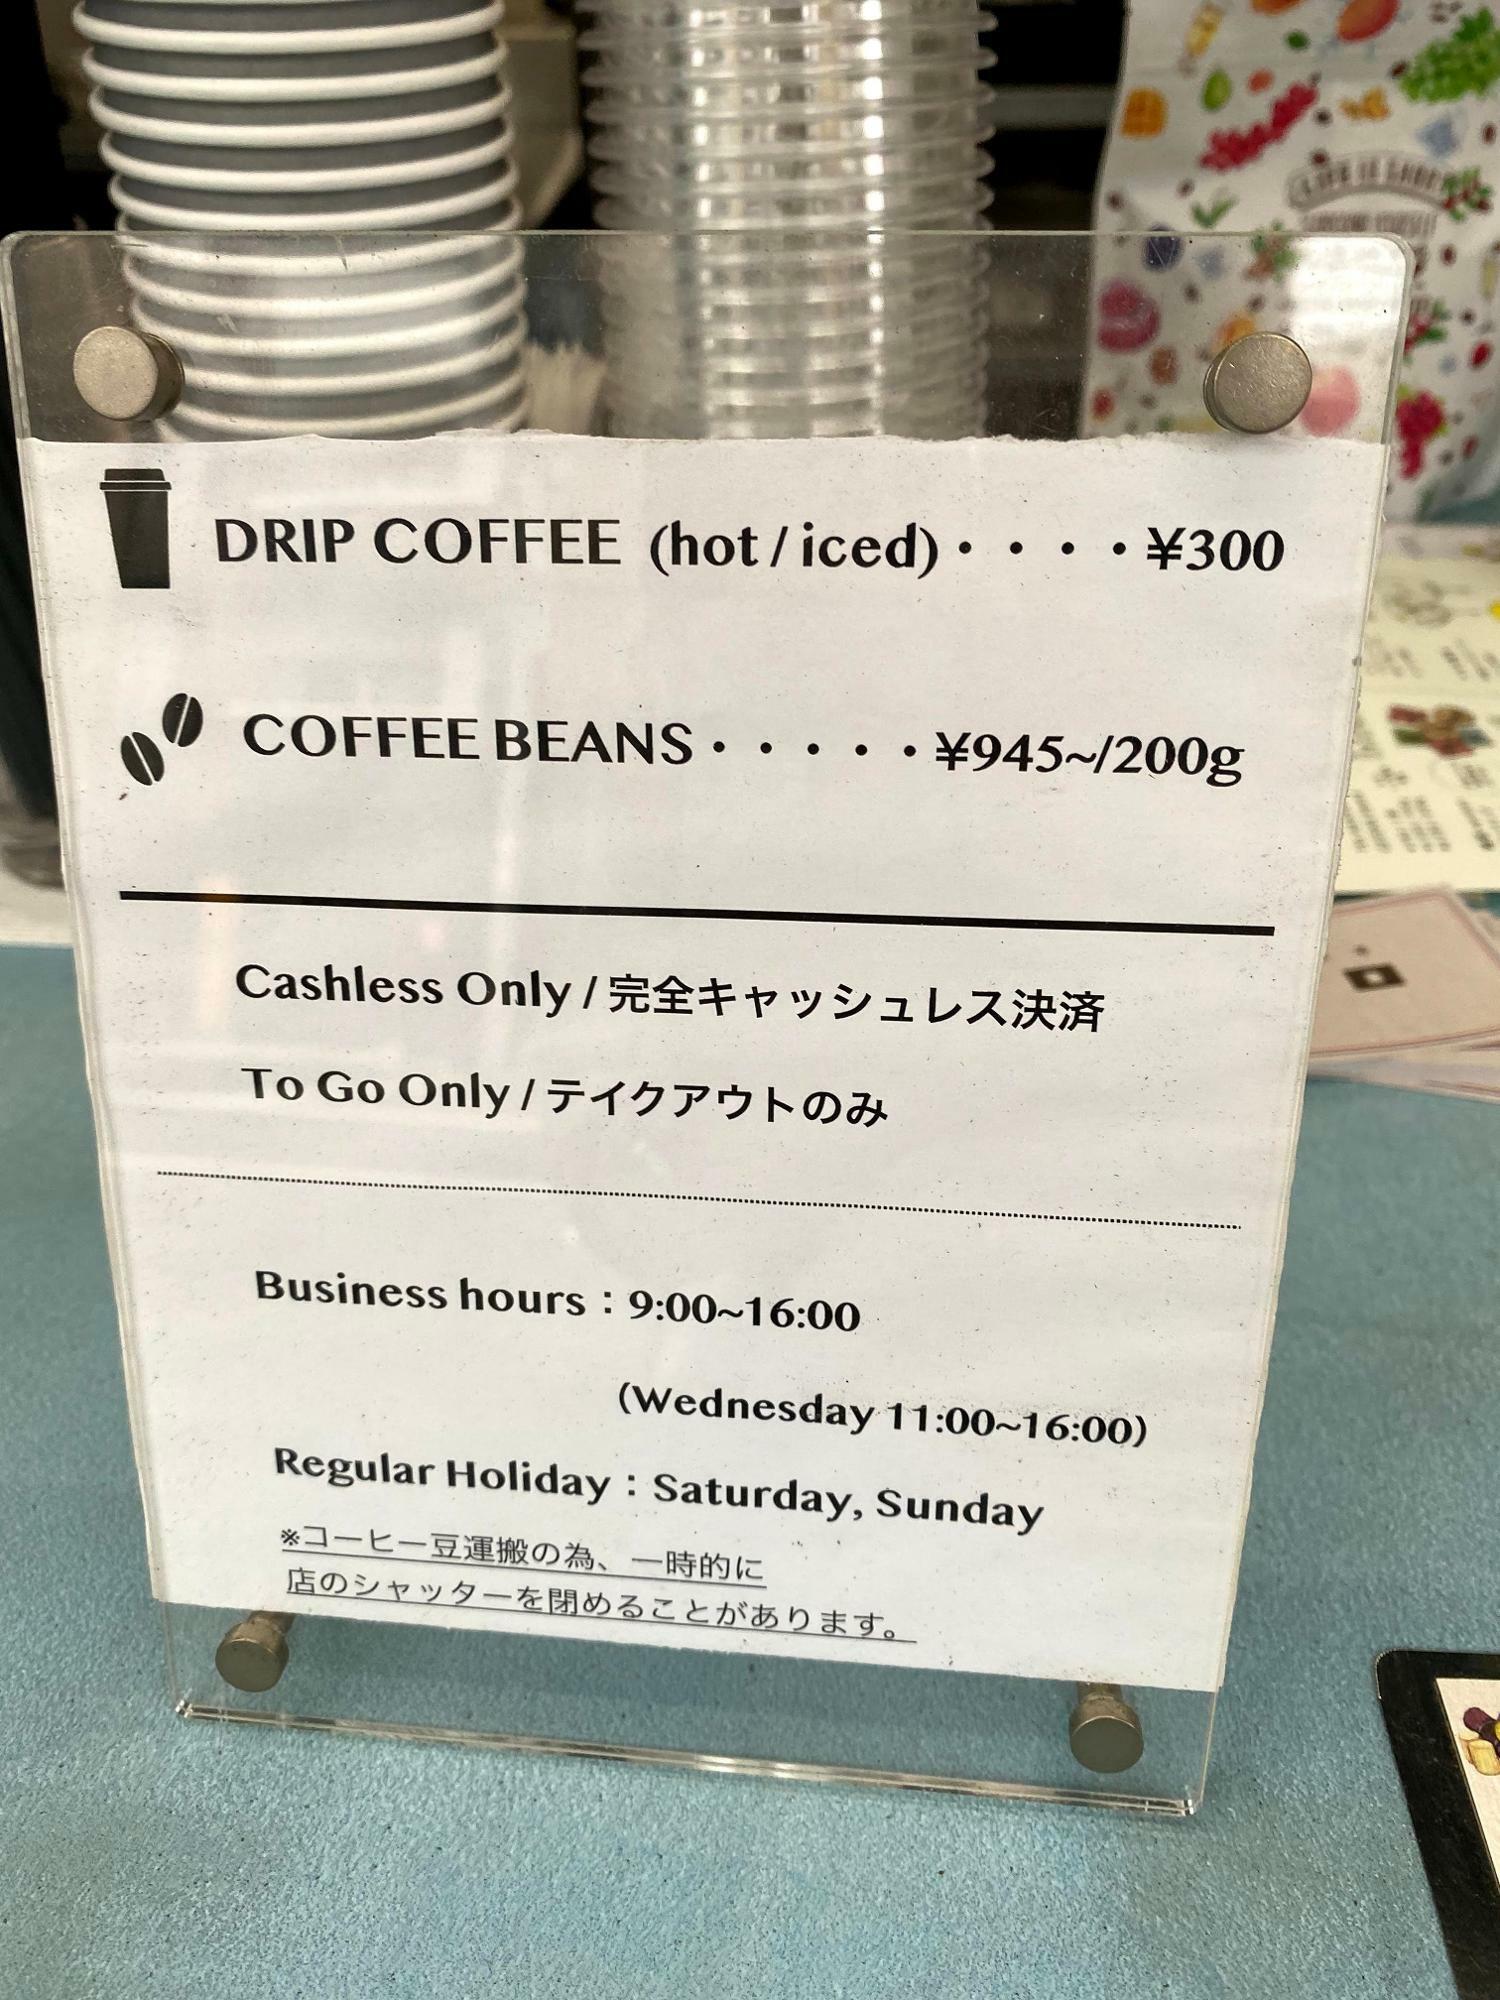 テイクアウトのコーヒーは日替わり3種、ホット・アイスともに各300円、豆は200g945円～